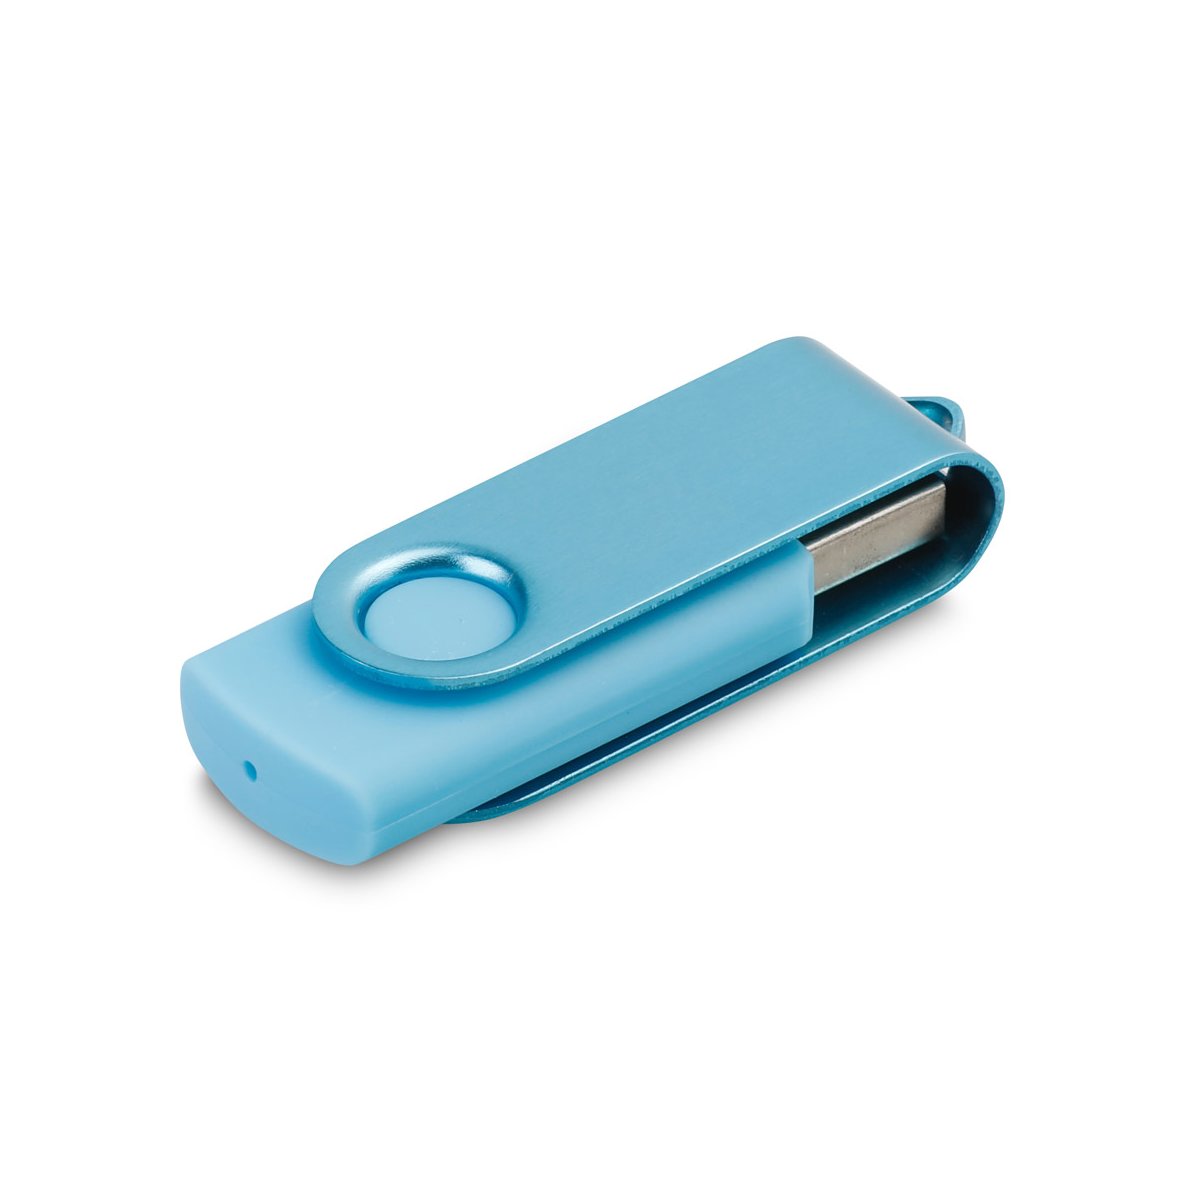 11080. Dysk flash USB o pojemności 8 GB - Błękitny